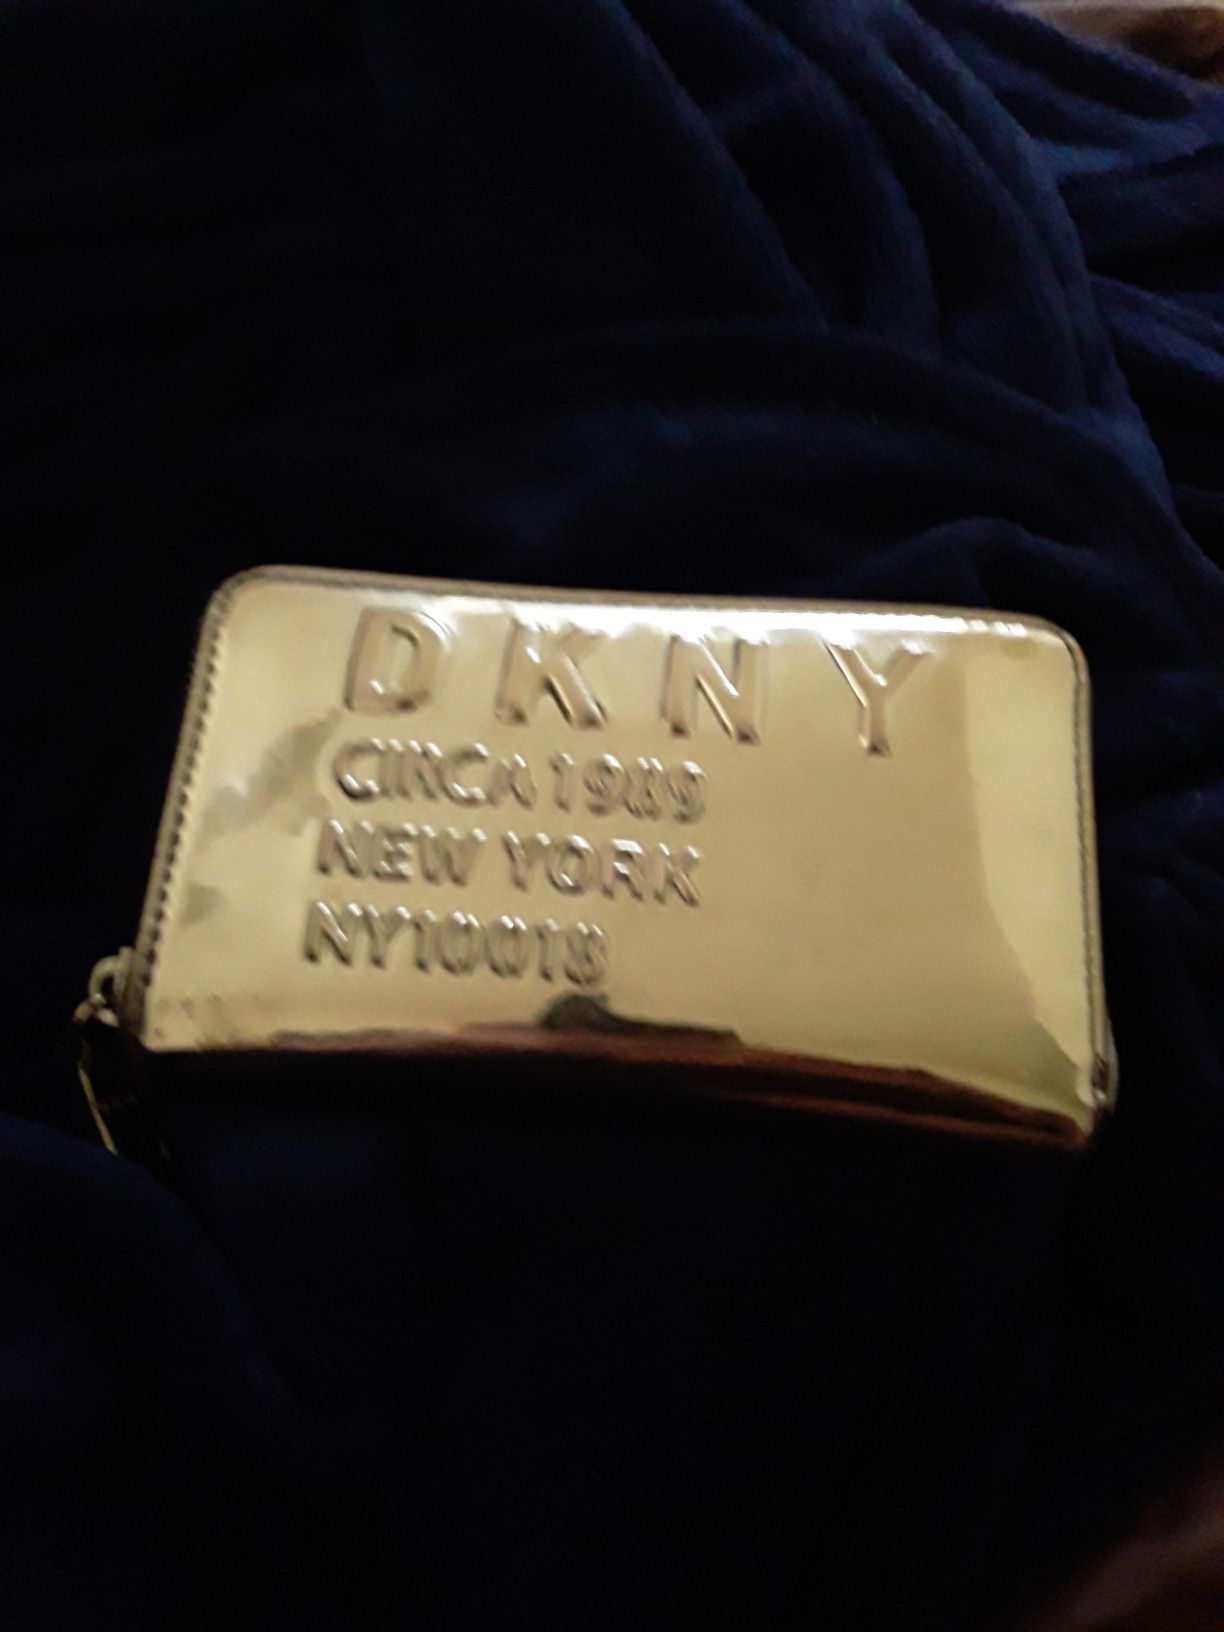 Dkny wallet like new